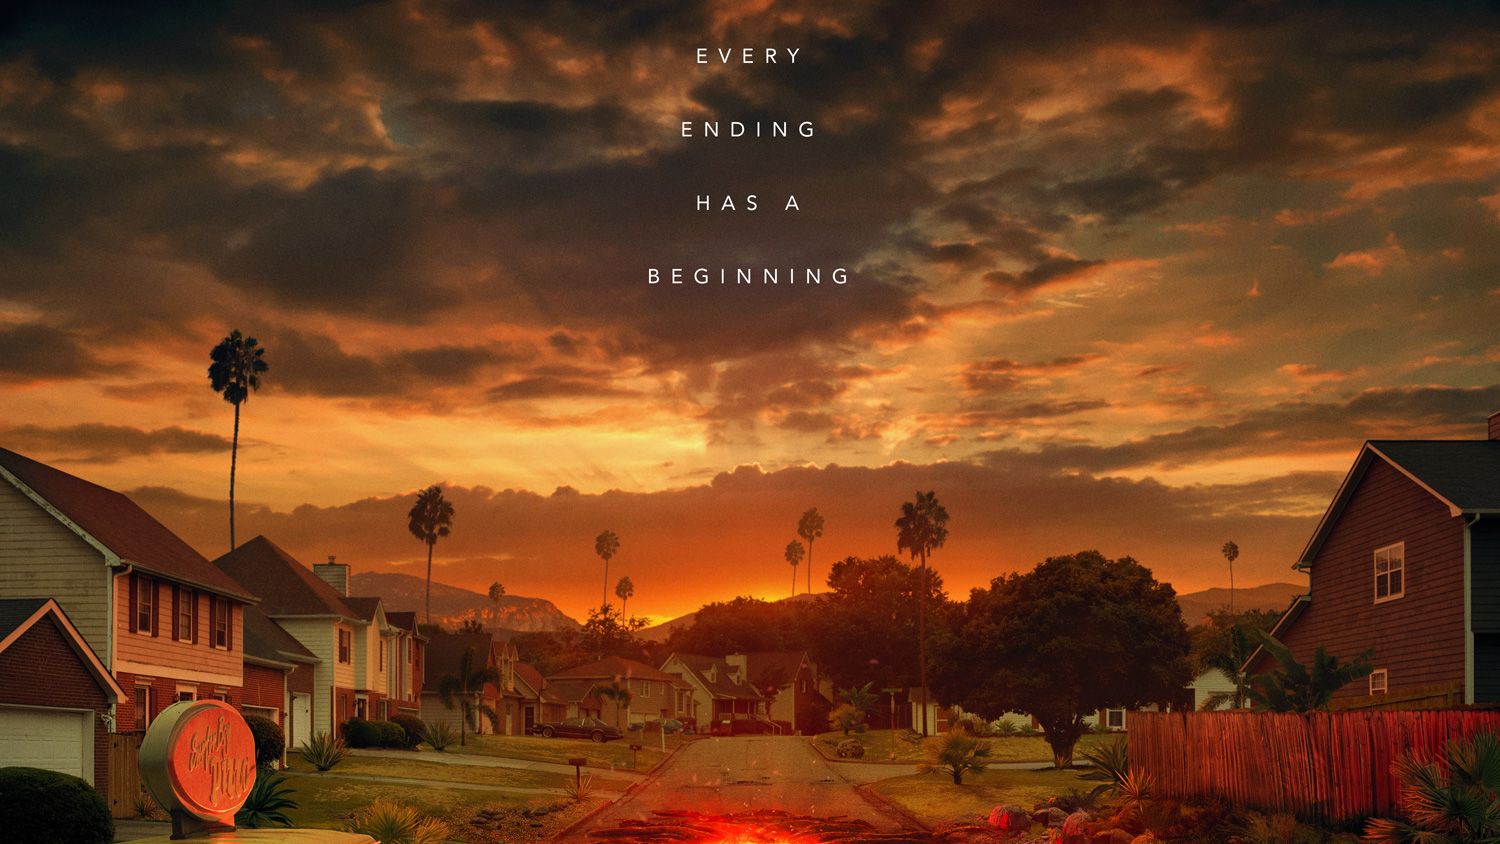 Stranger Things' Season 4 To Premiere In 2022, New Teaser Released –  Deadline